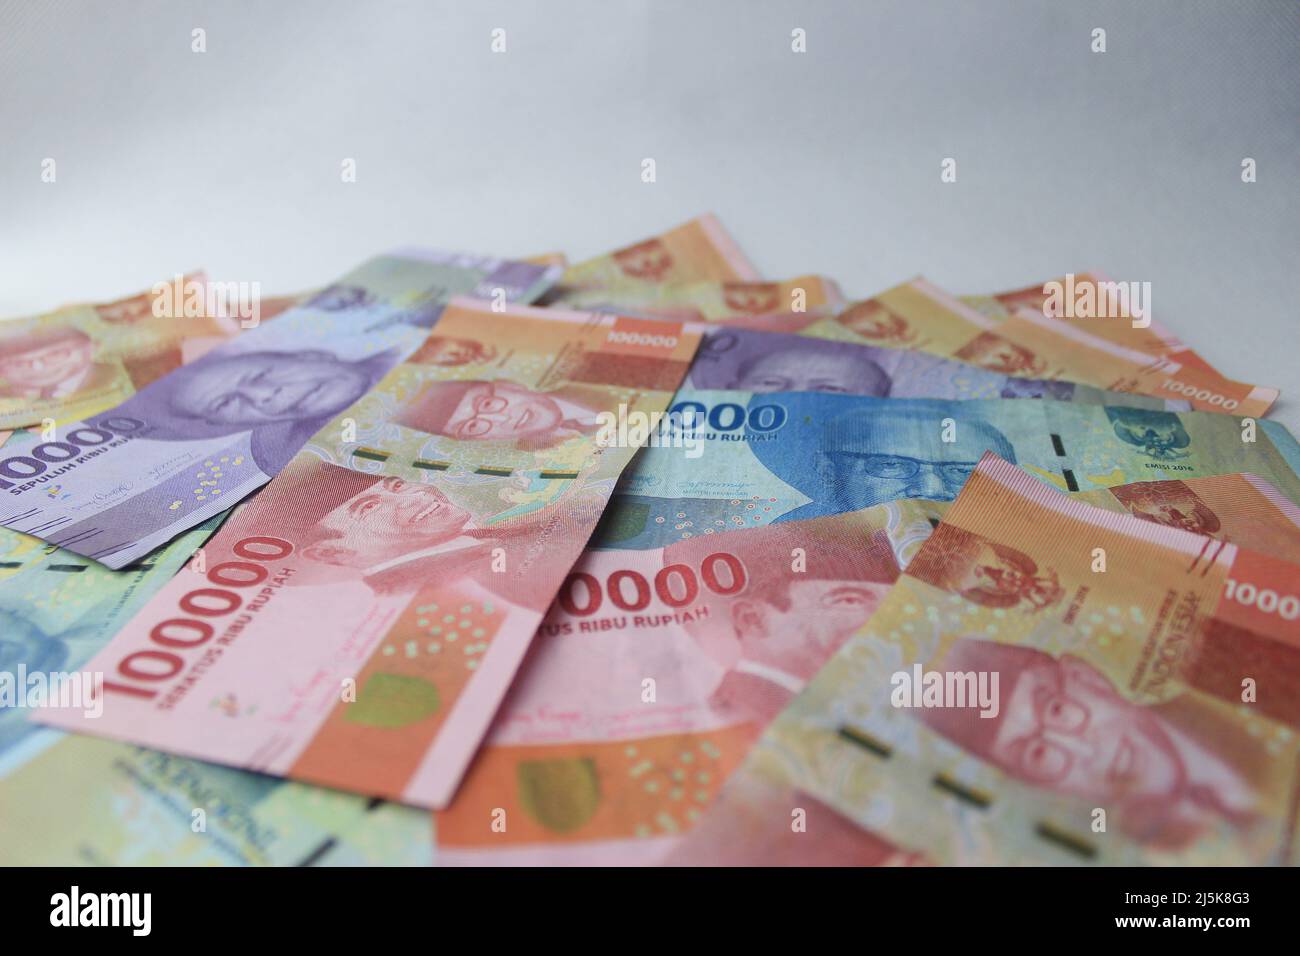 Money indonesia Banque de photographies et d'images à haute résolution -  Alamy